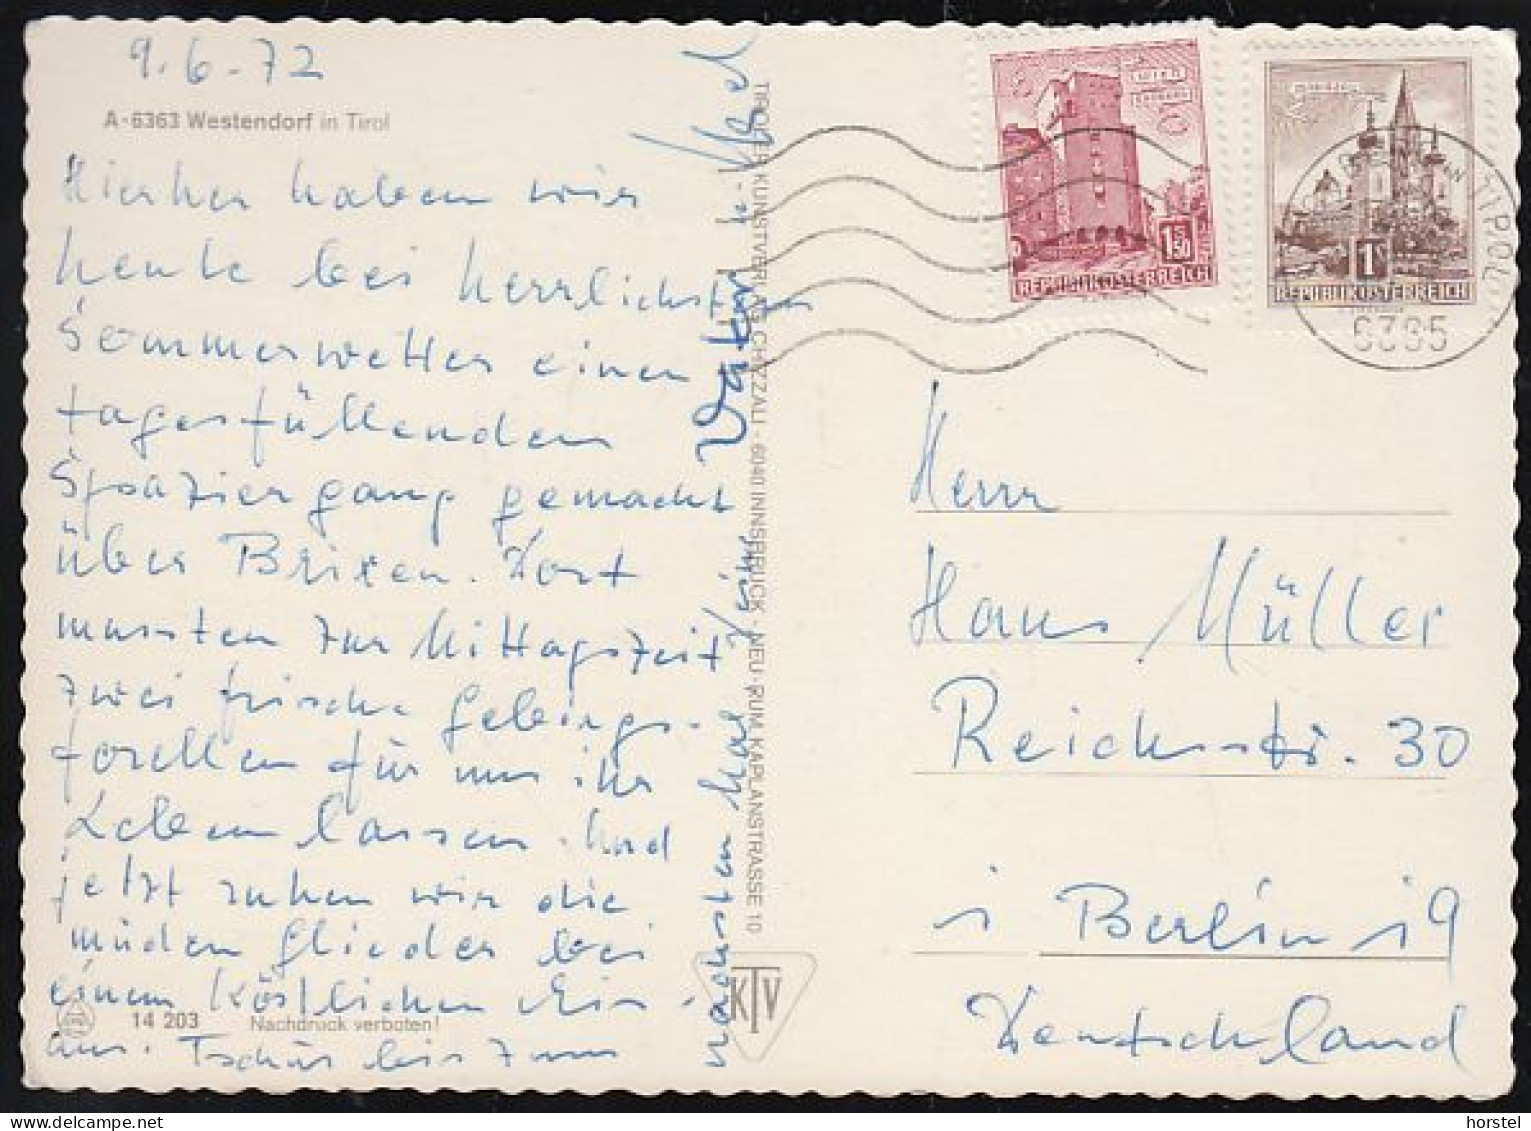 Austria - 6363 Westendorf - Alte Ortsansichten - Schwimmbad - Freibad - Festumzug - 2x Nice Stamps - Brixen Im Thale